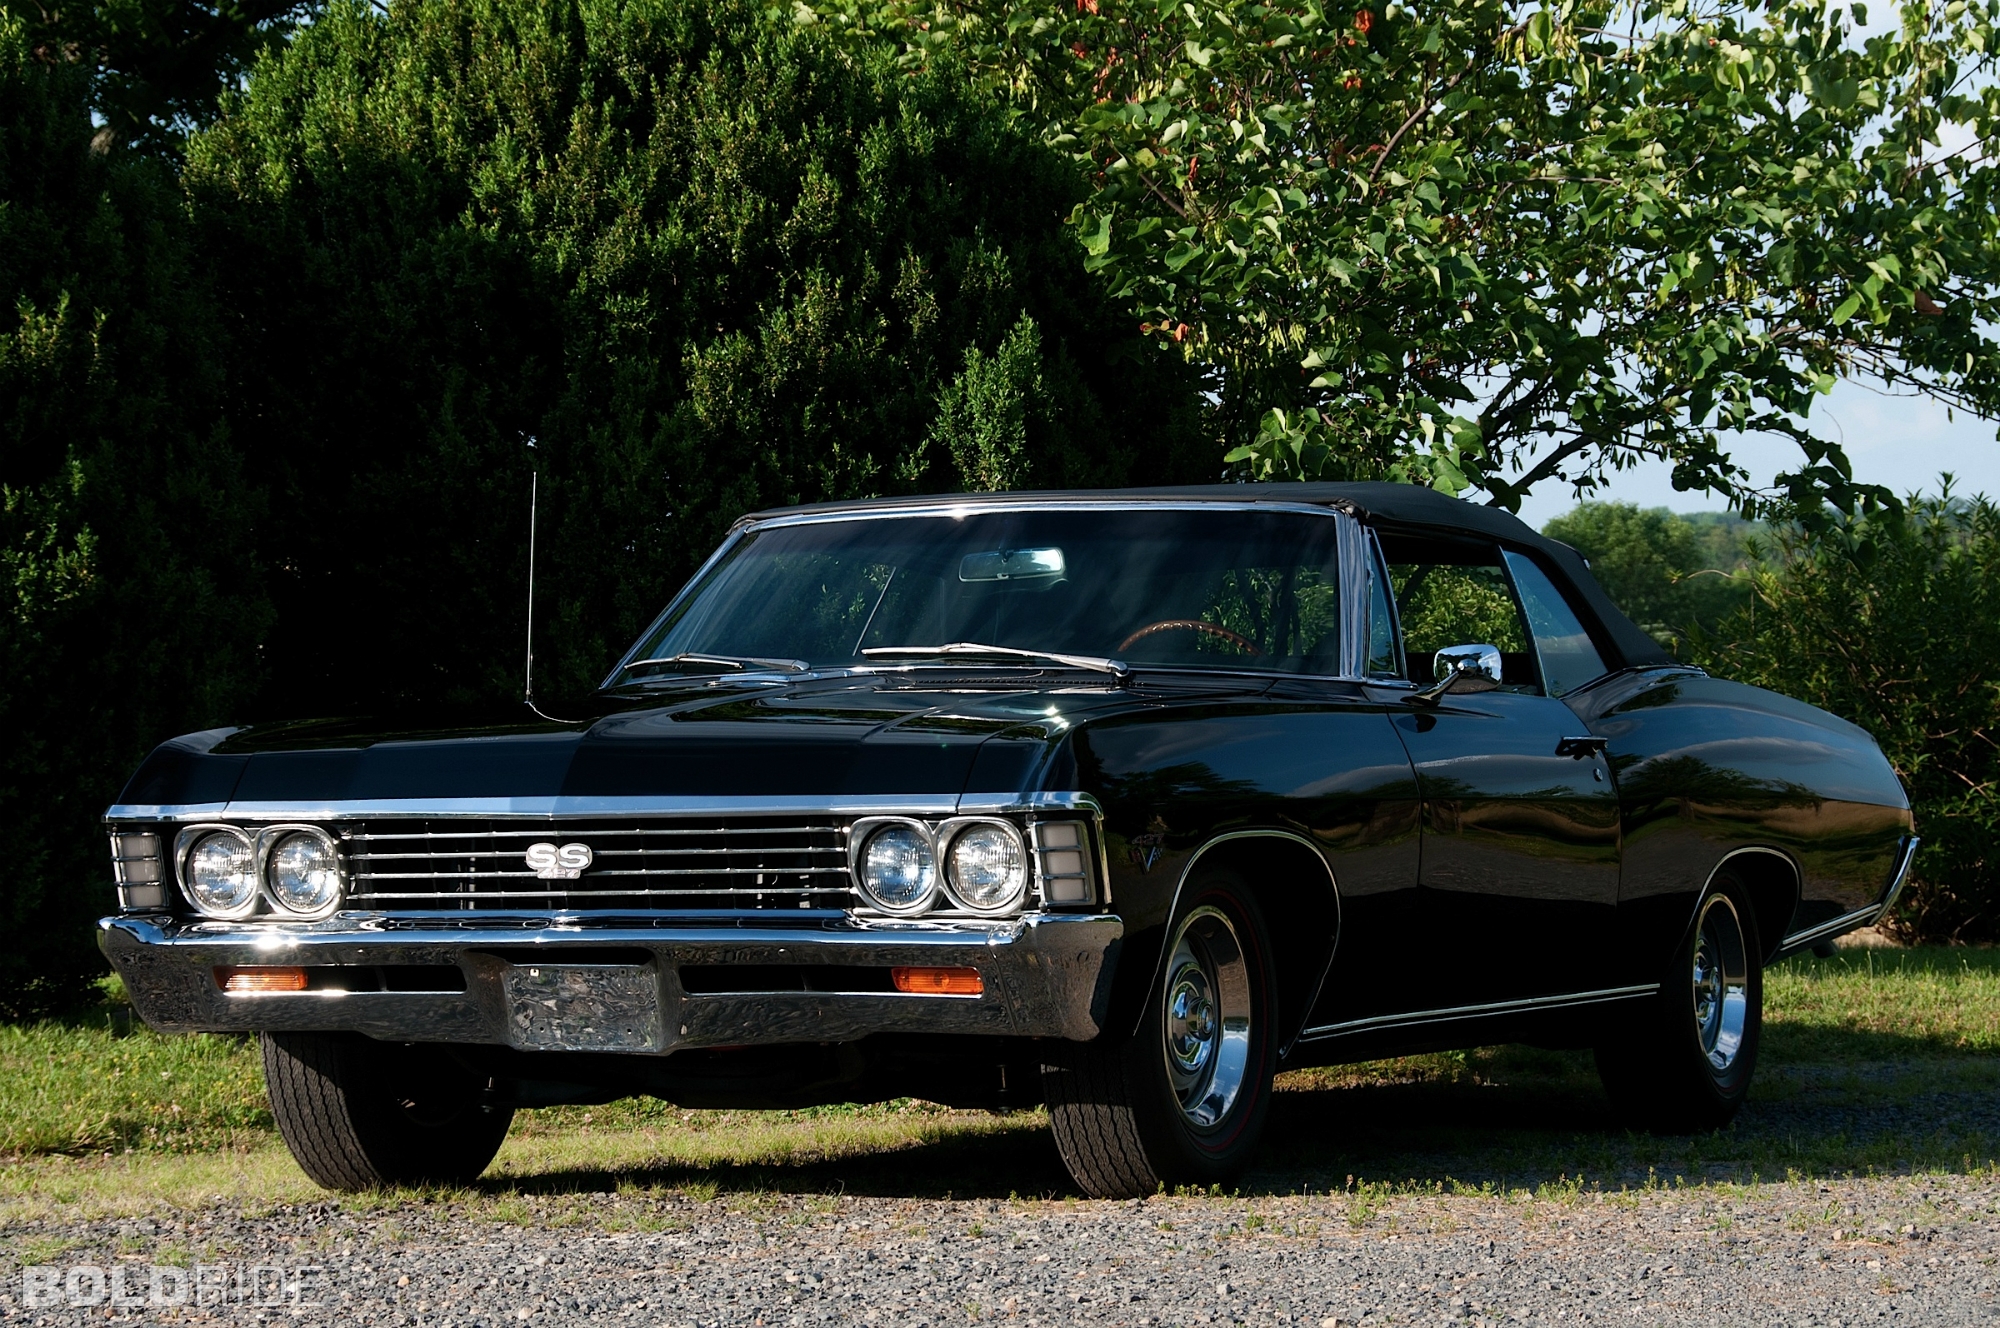 98+] 1967 Chevrolet Impala Wallpapers - WallpaperSafari